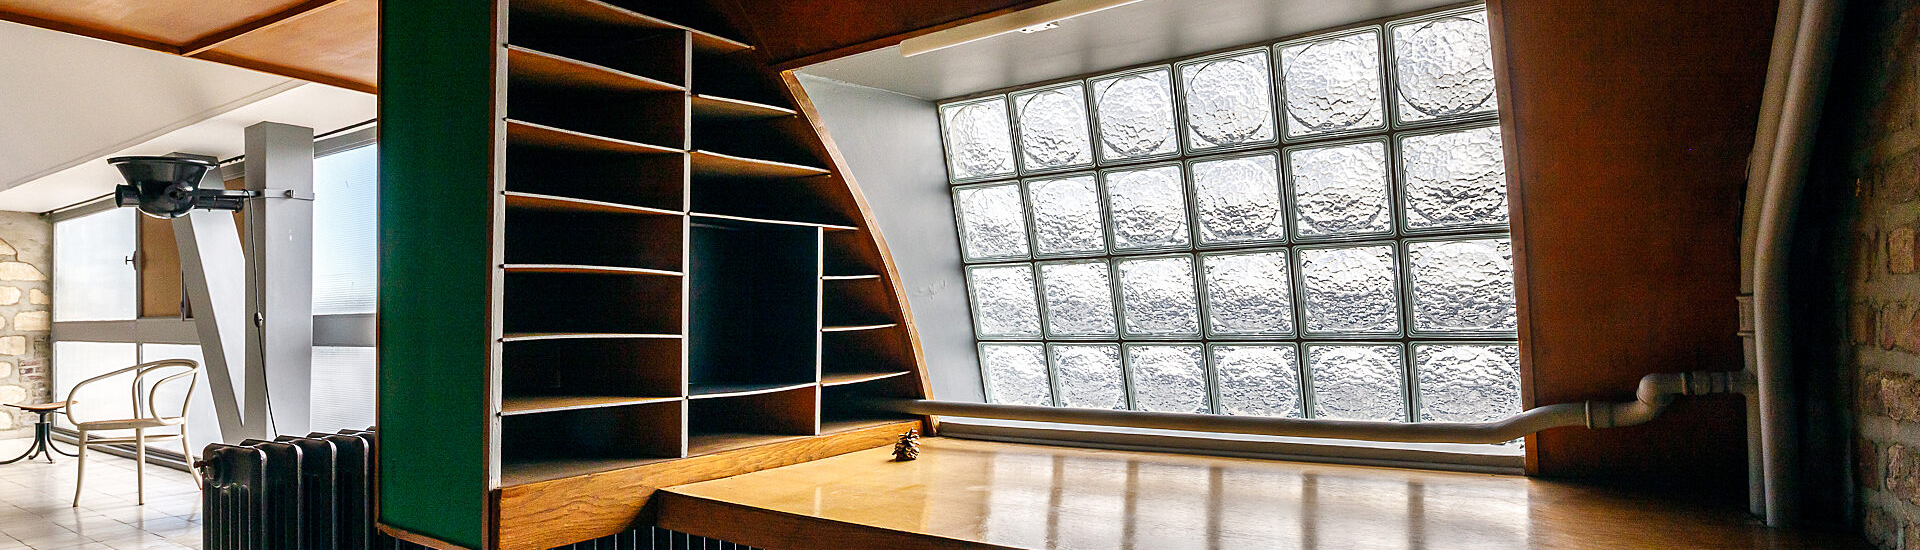 Le bureau de Le Corbusier dans son appartement © FLC / ADAGP / Frédéric Betsch